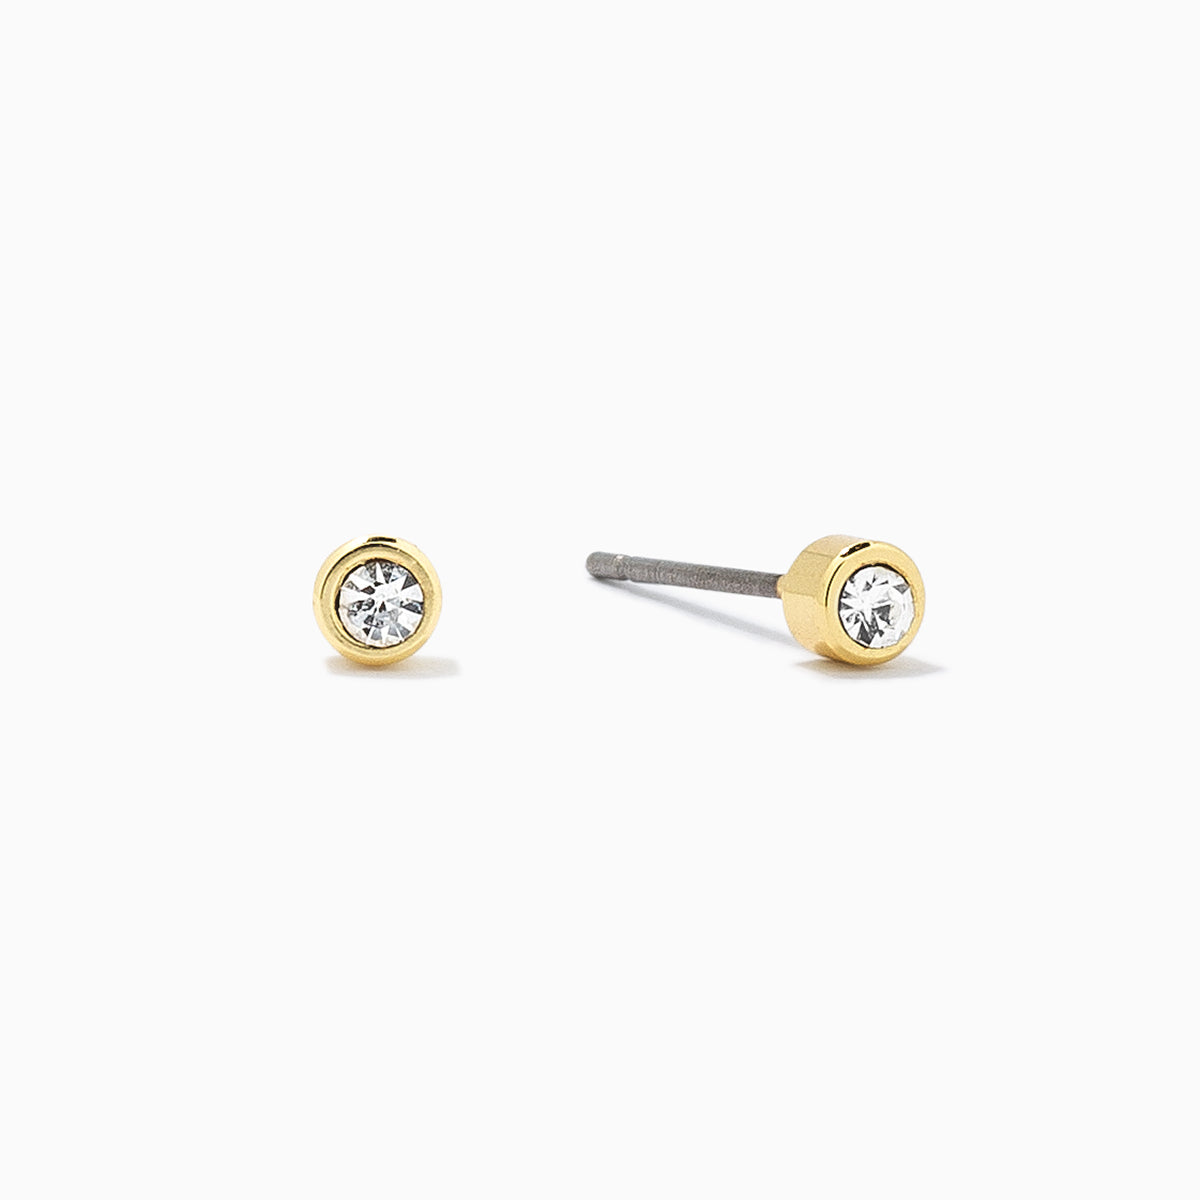 Chain Earrings - Gold Chain Earrings, Simple Gold Earrings, Simple Earrings, Dainty Gold Earrings, Surgical Steel Earrings |GPE00011